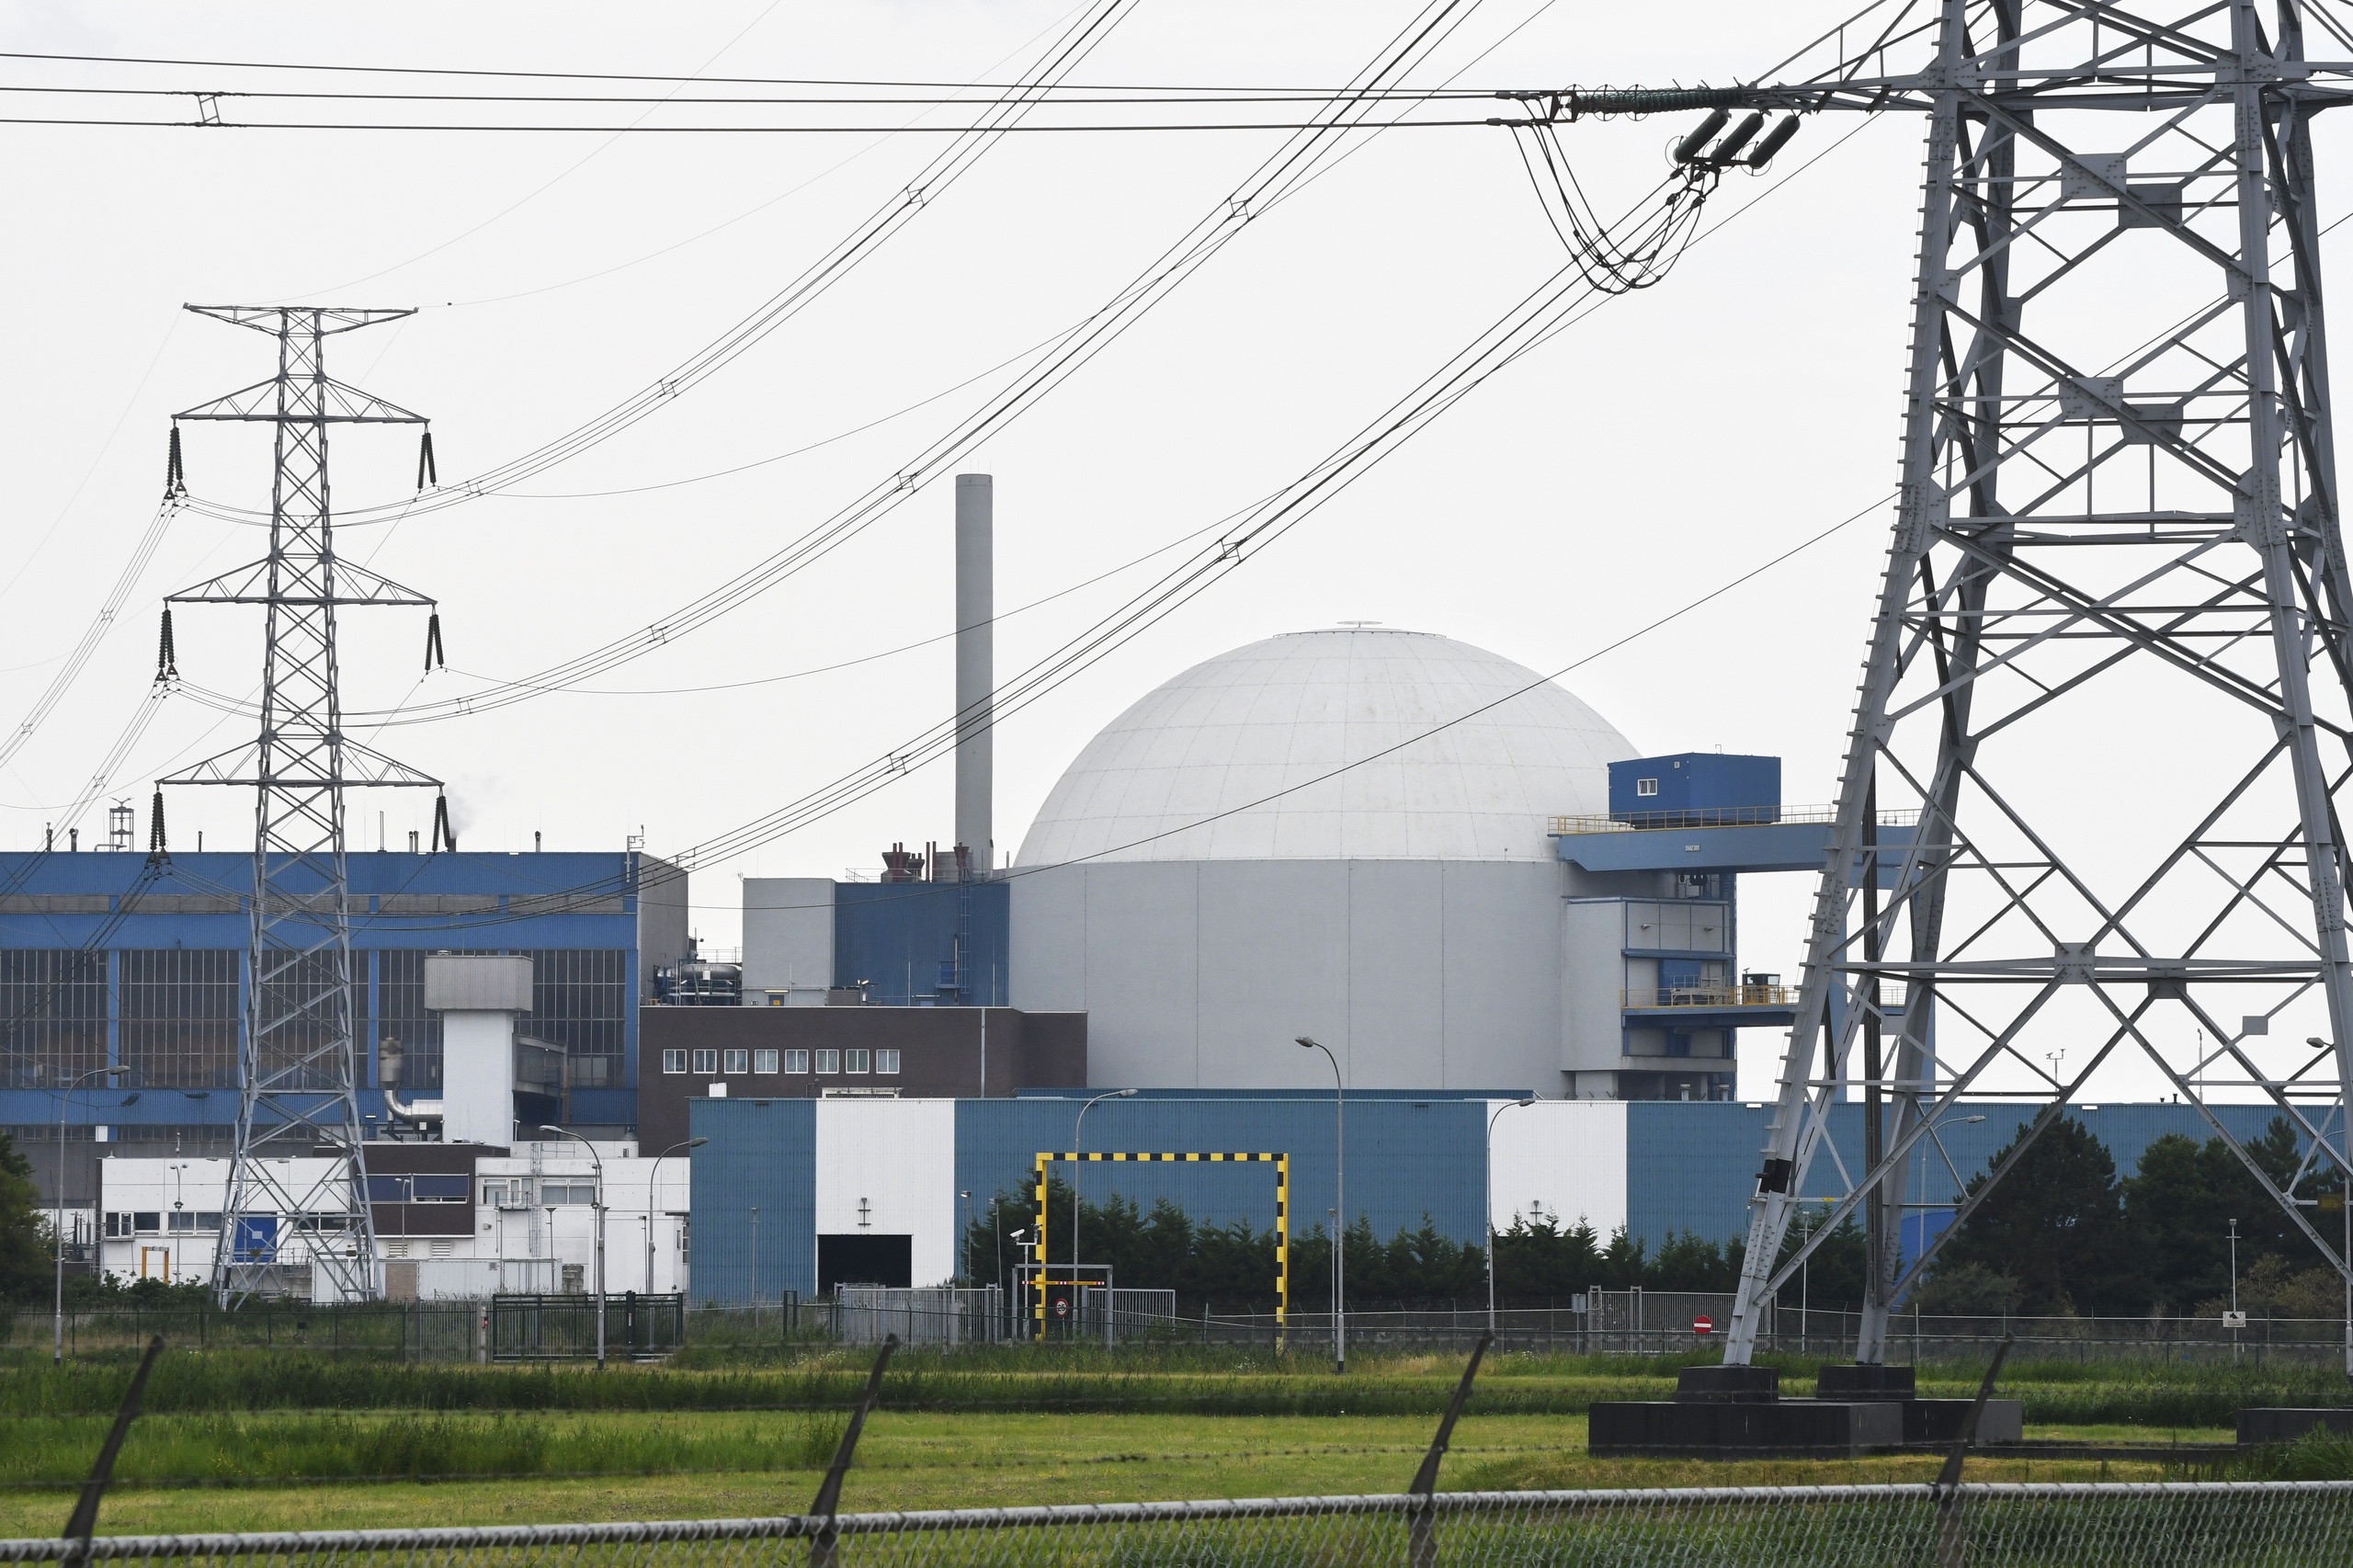 Het kabinet wil twee nieuwe kerncentrales in Borssele plaatsen. Dat meldt RTL Nieuws. De centrales moeten vanaf uiterlijk 2035 draaien, het Rijk draagt financieel bij aan de bouw van de centrales. De nieuwe centrales werden al genoemd in het regeerakkoord.